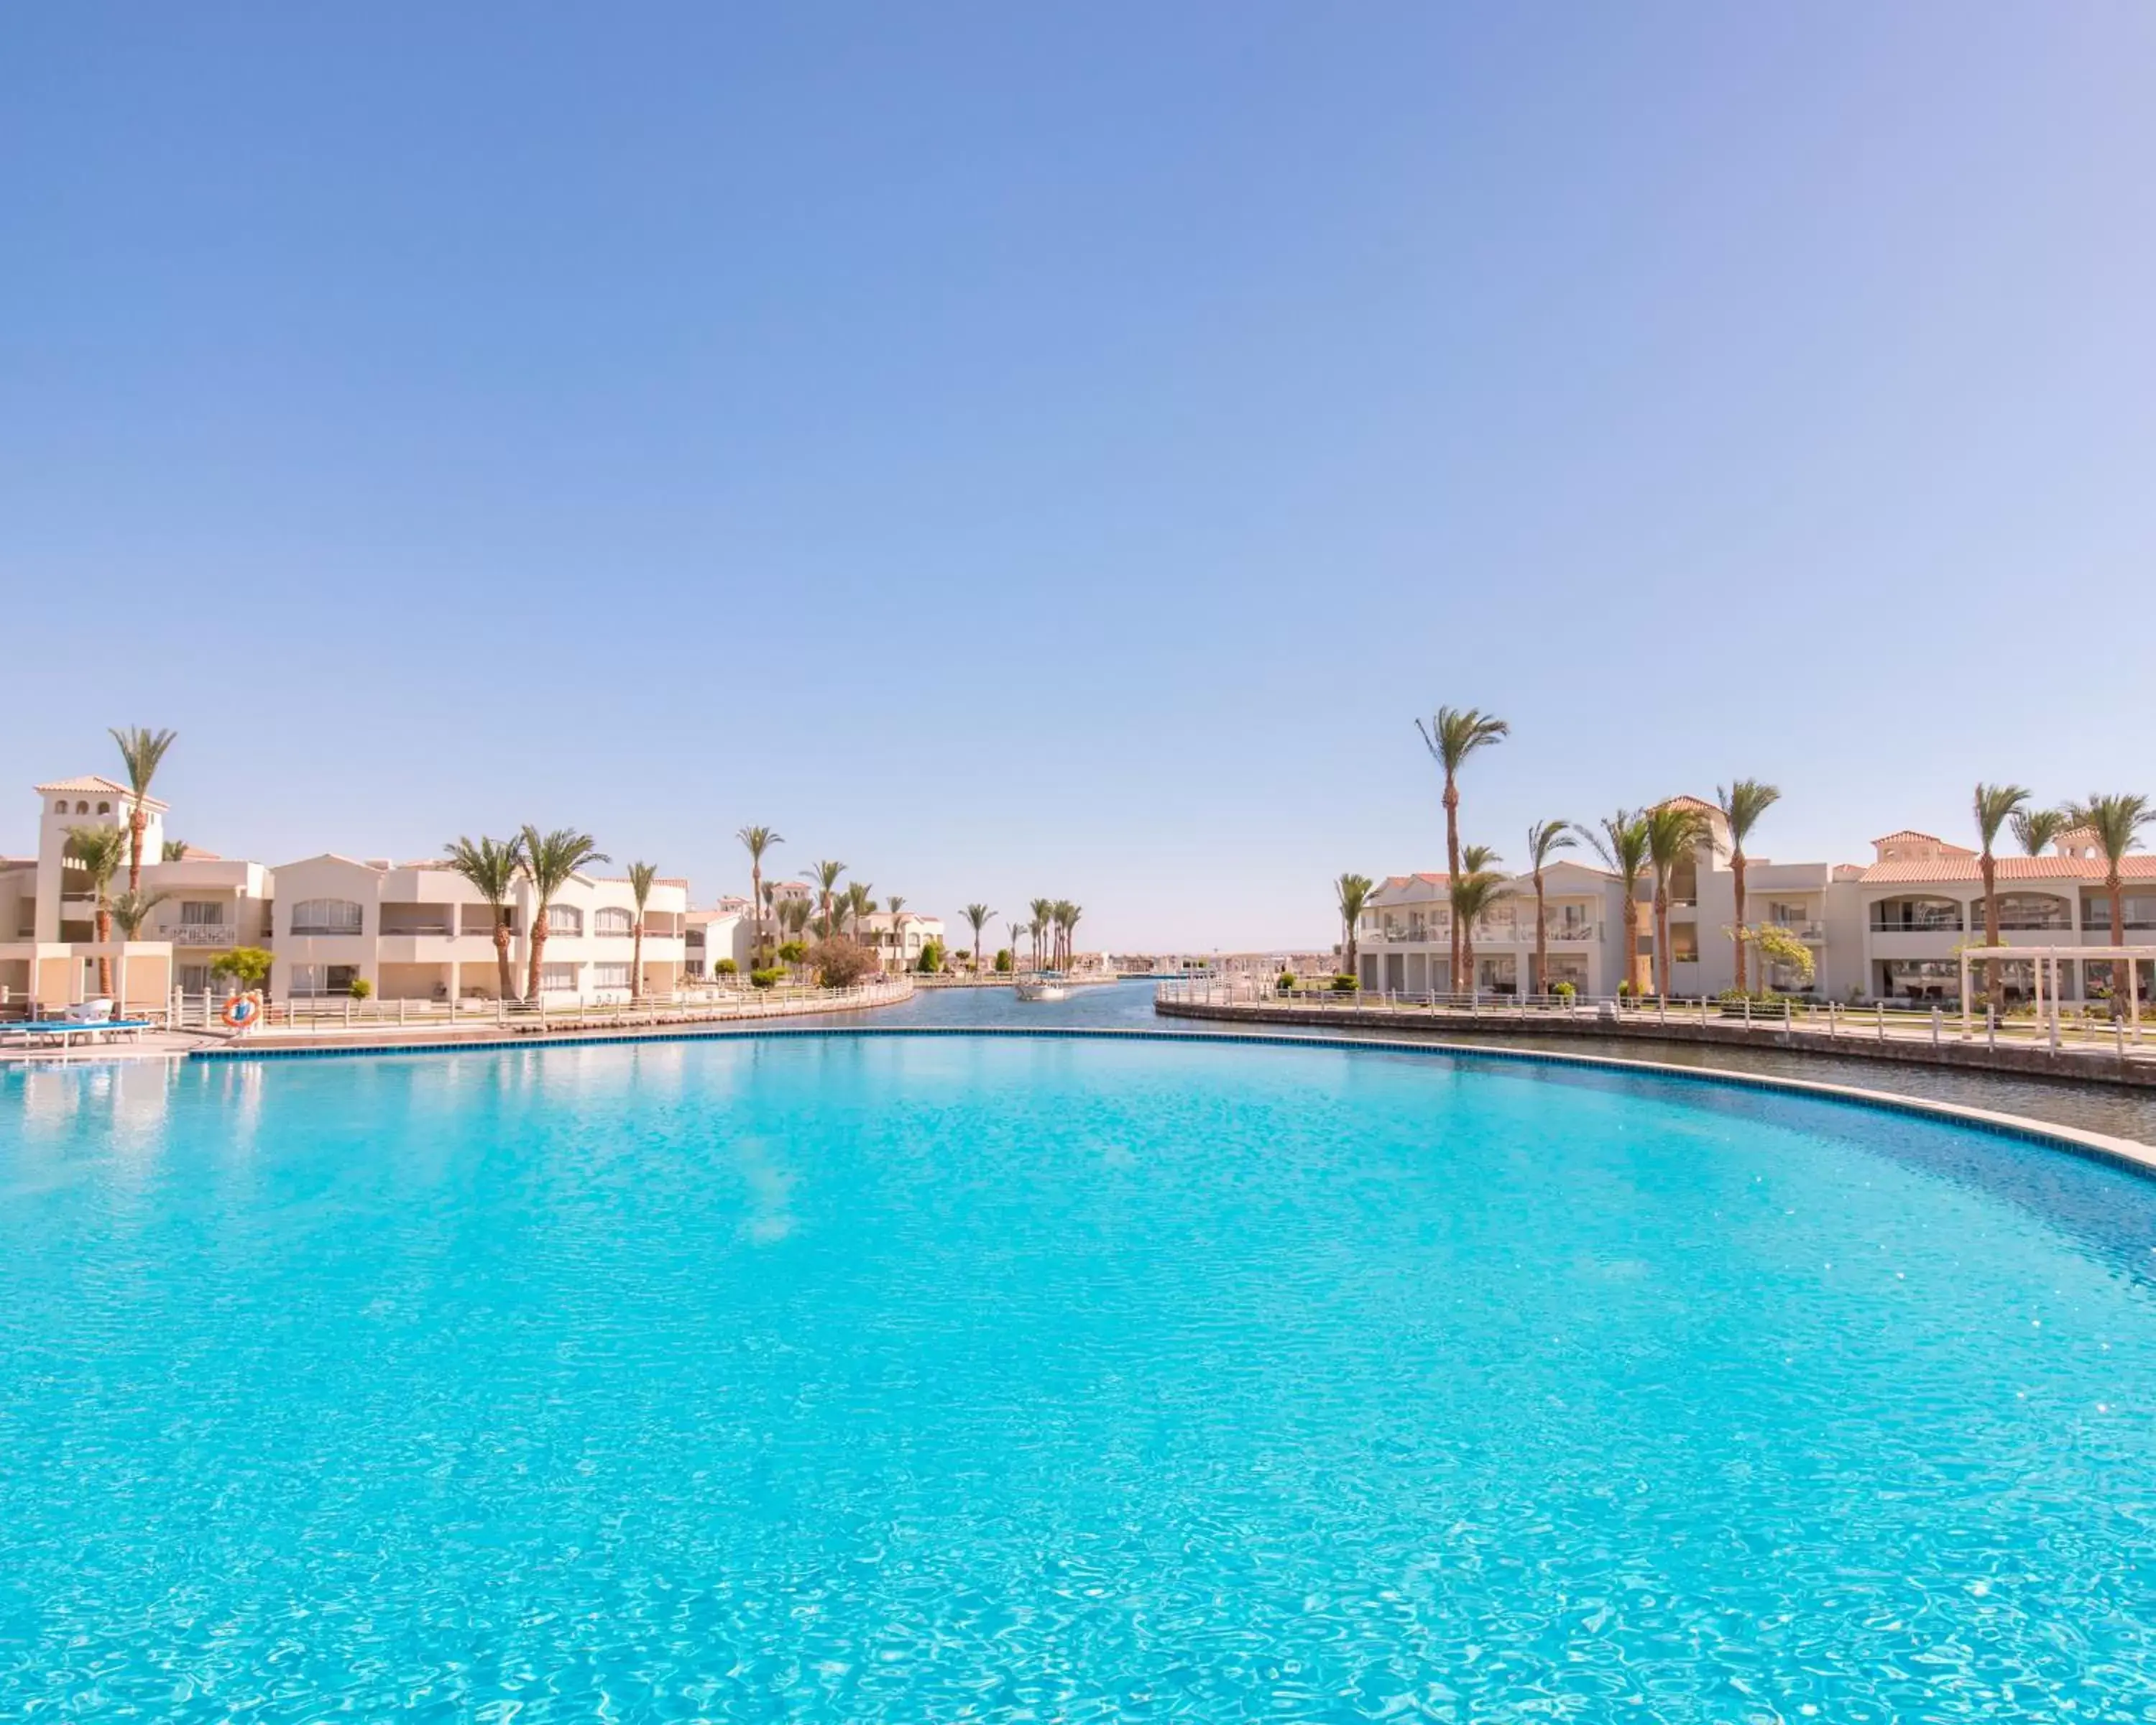 Swimming Pool in Pickalbatros Dana Beach Resort - Hurghada